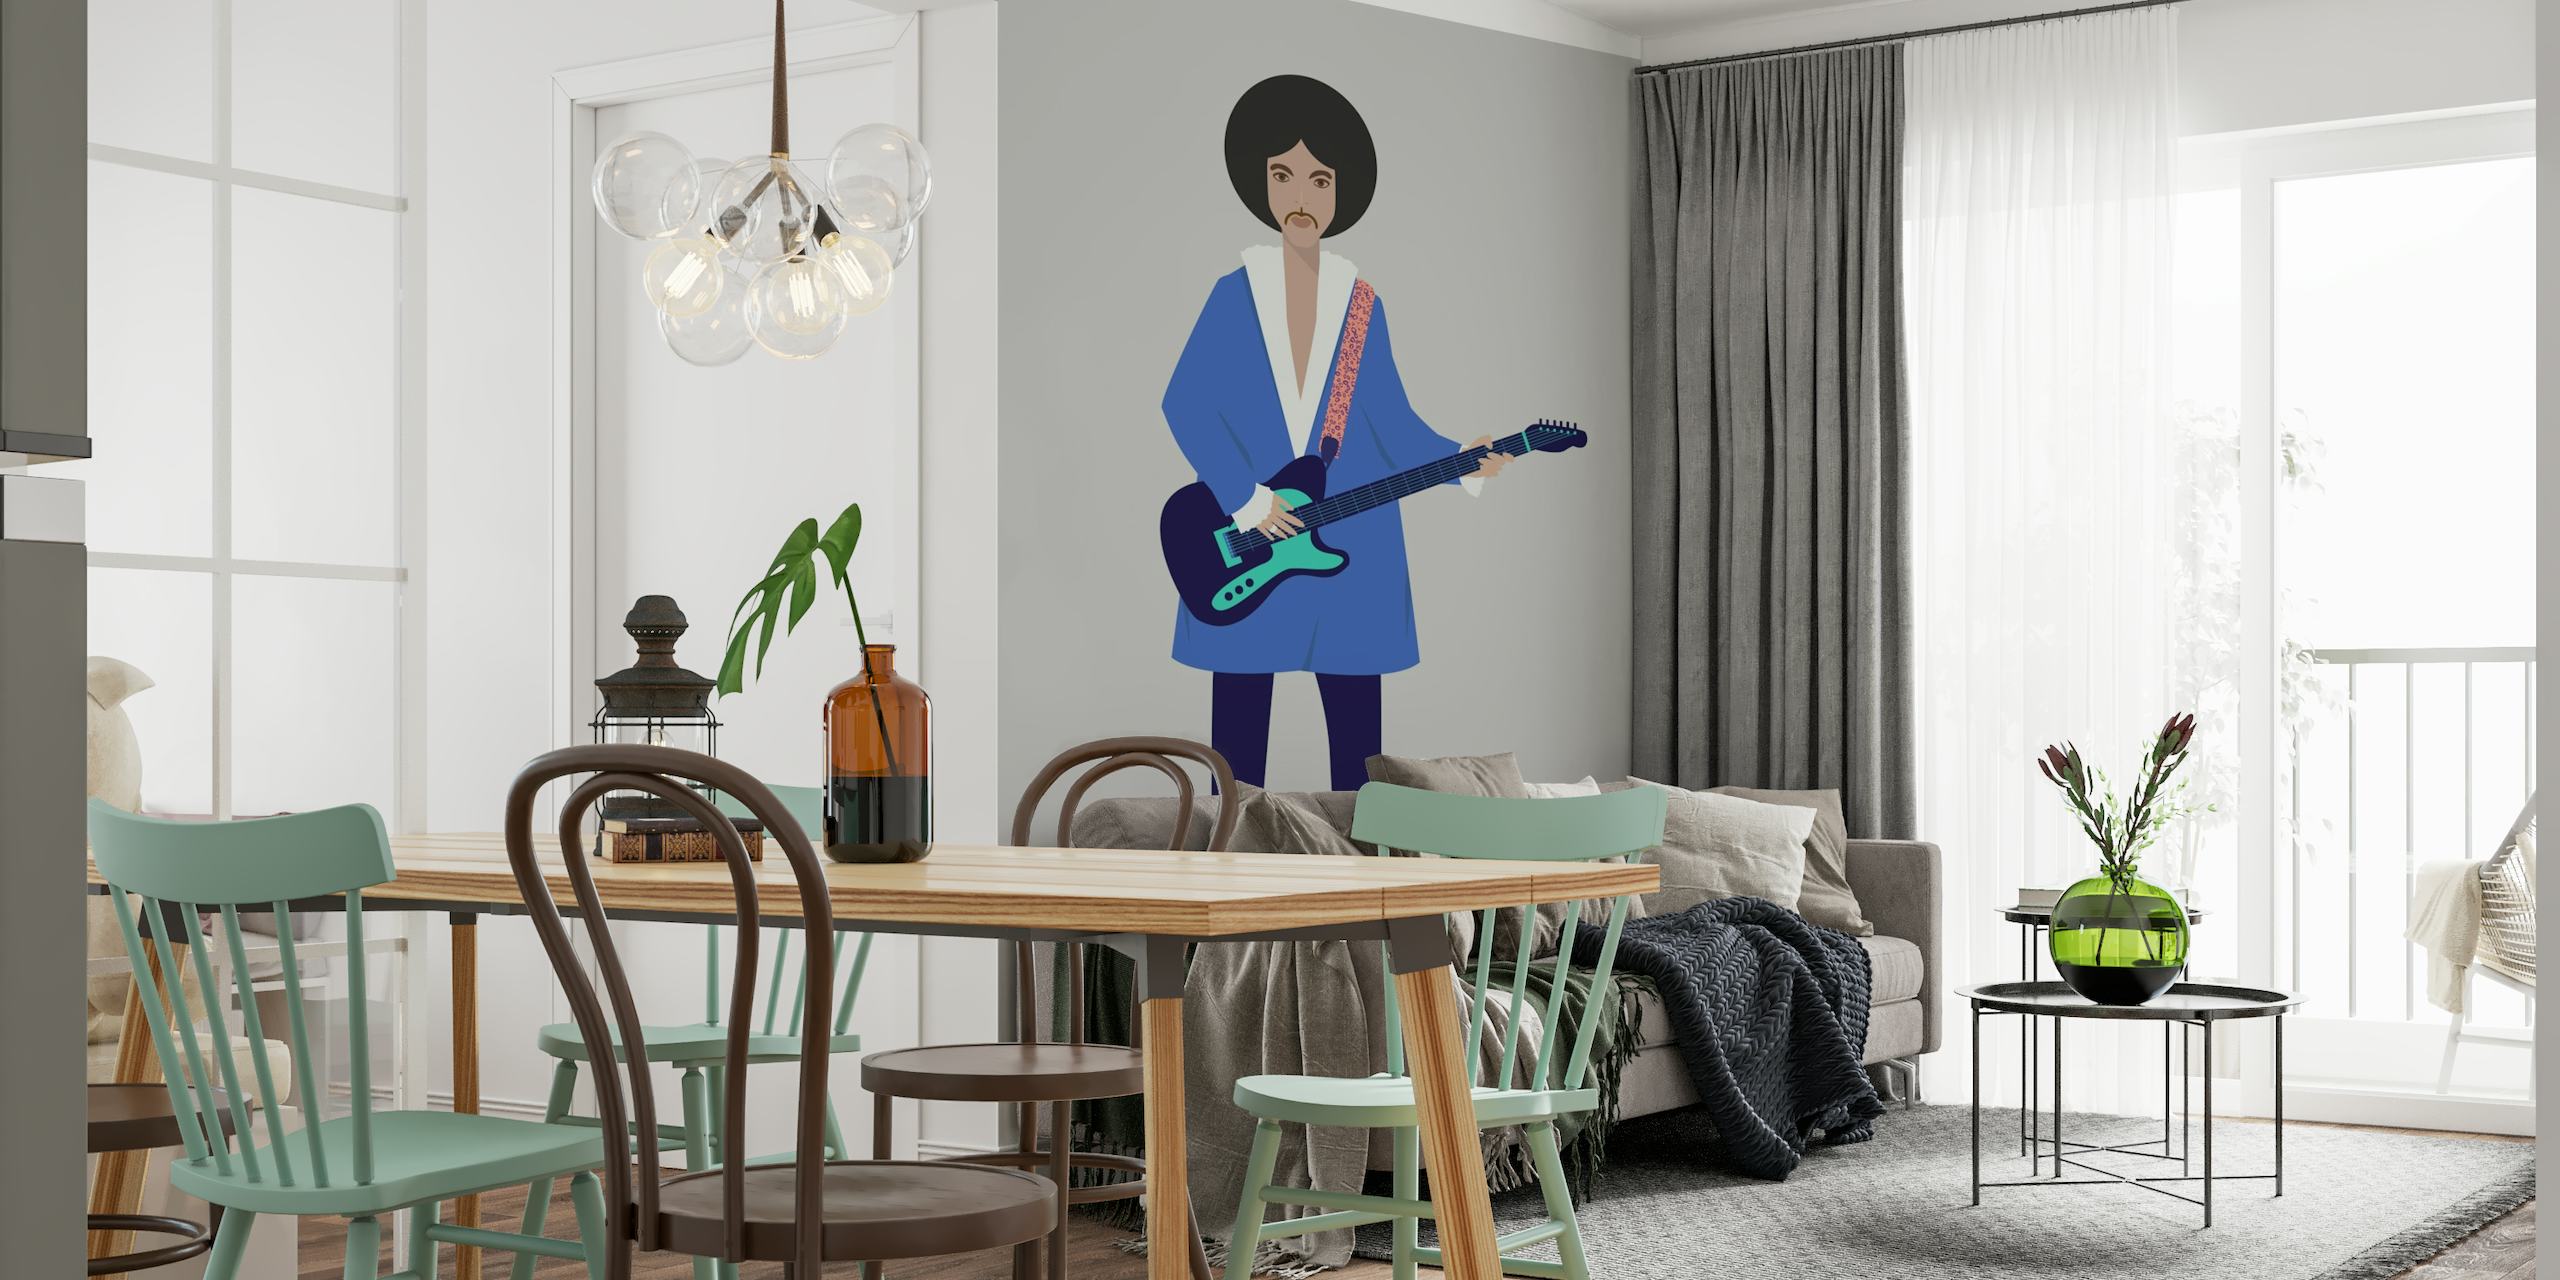 Ilustrativni zidni mural osobe s gitarom, modernog umjetničkog dizajna